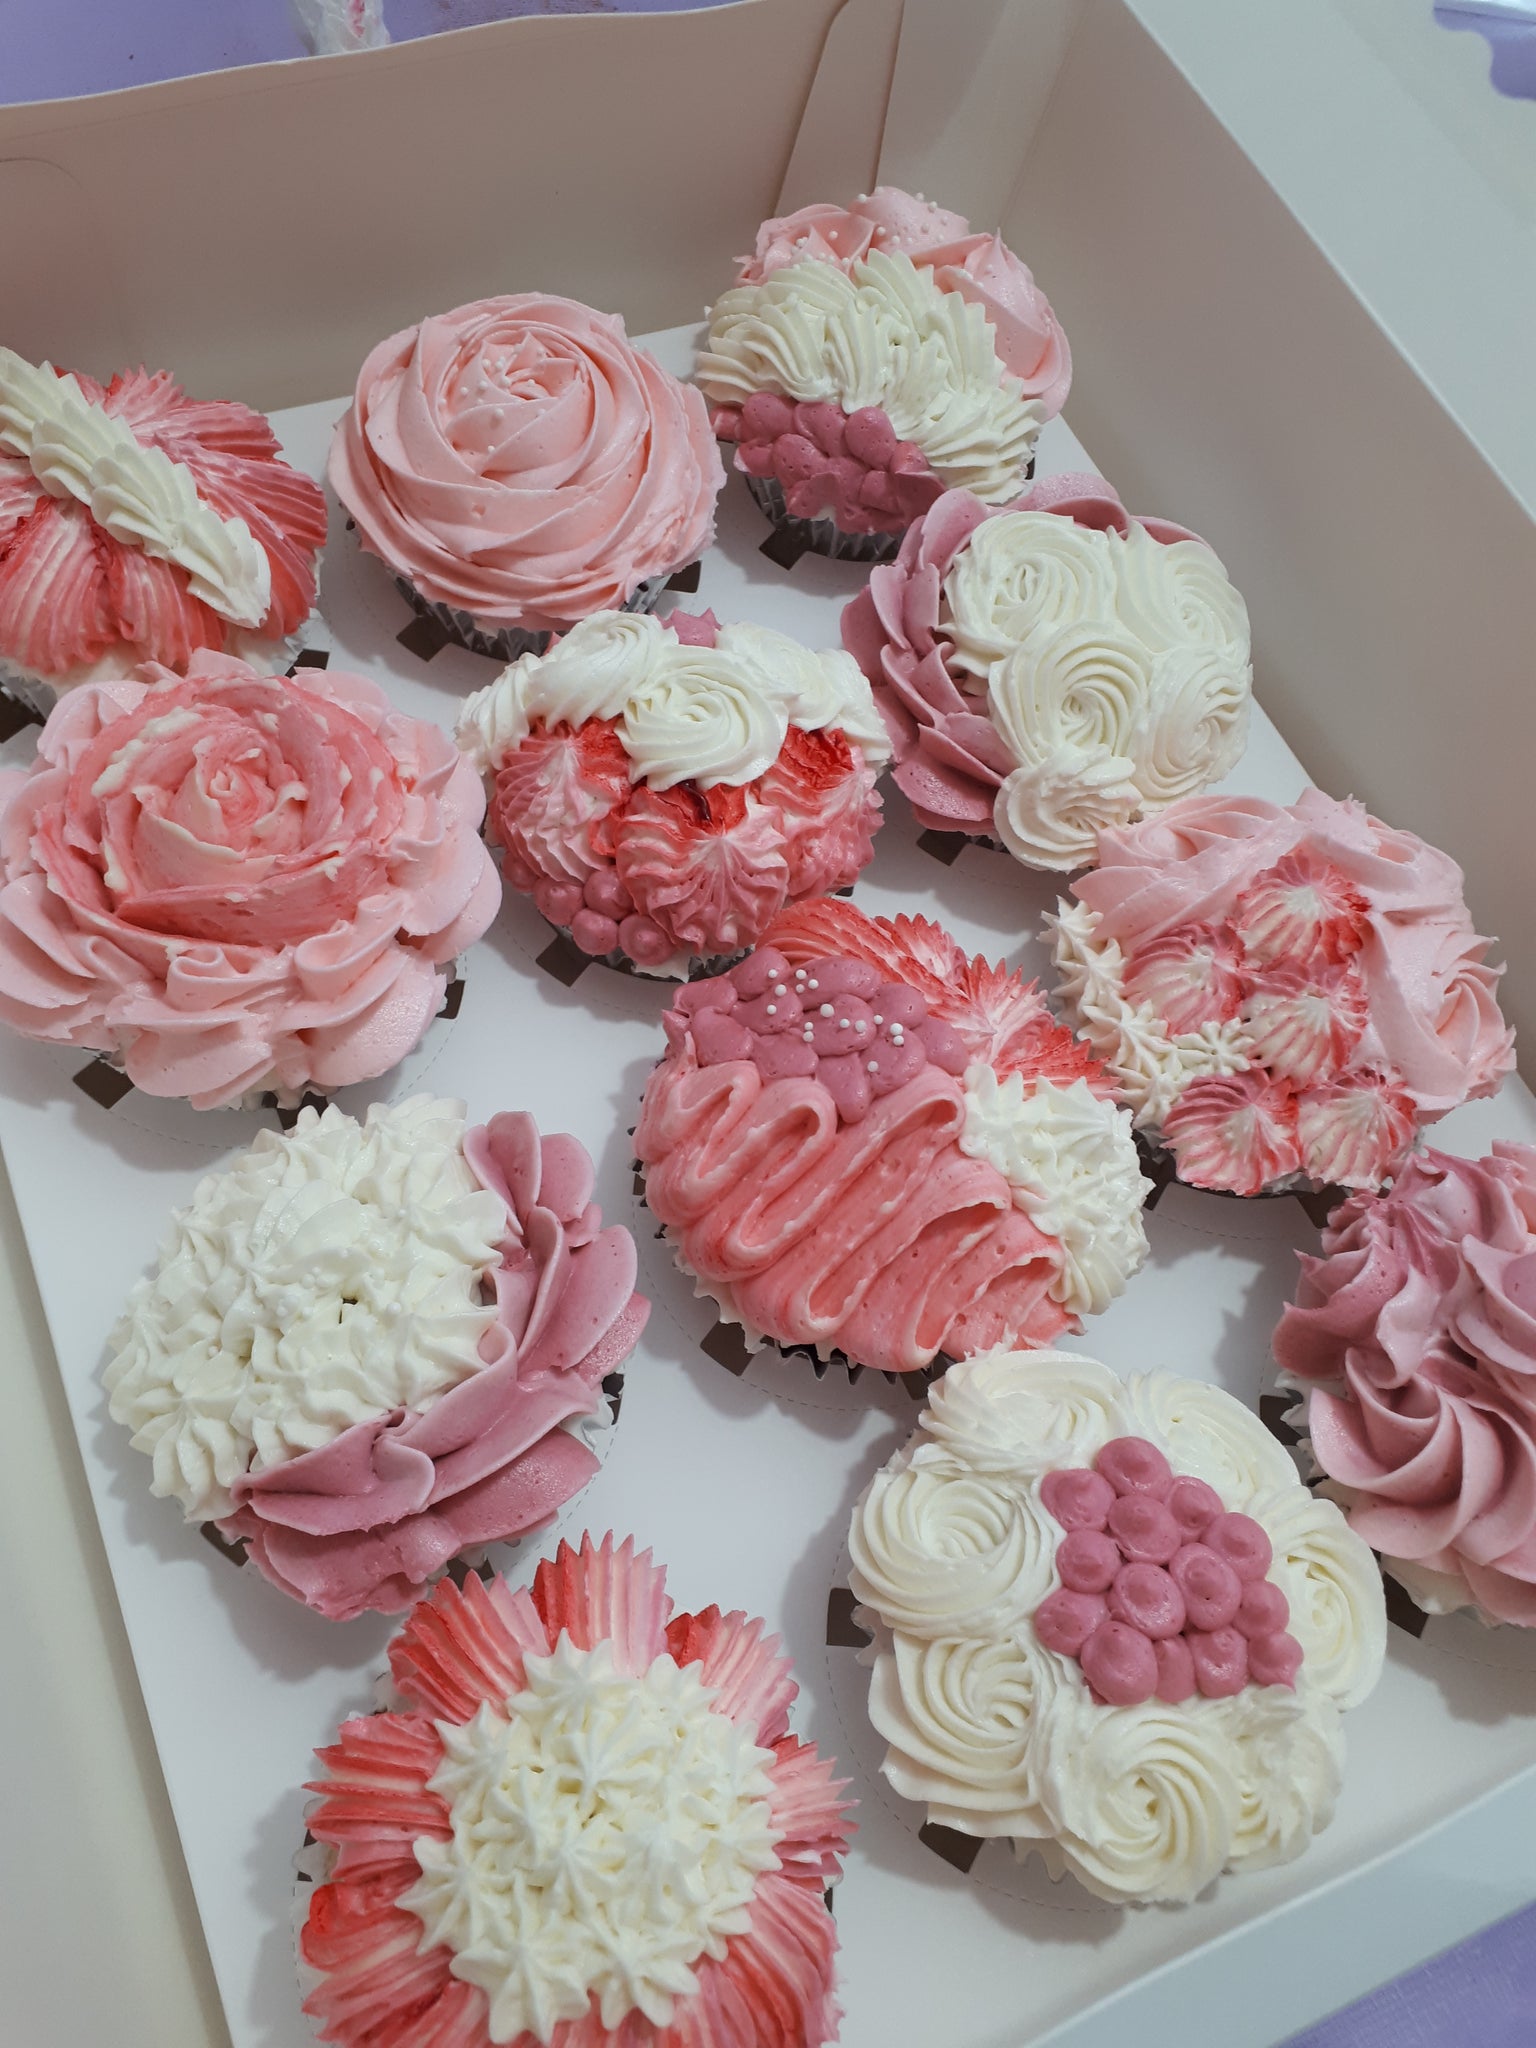 SET. 100 Caissettes à Mini Cupcakes Muffins Rose Fleurs